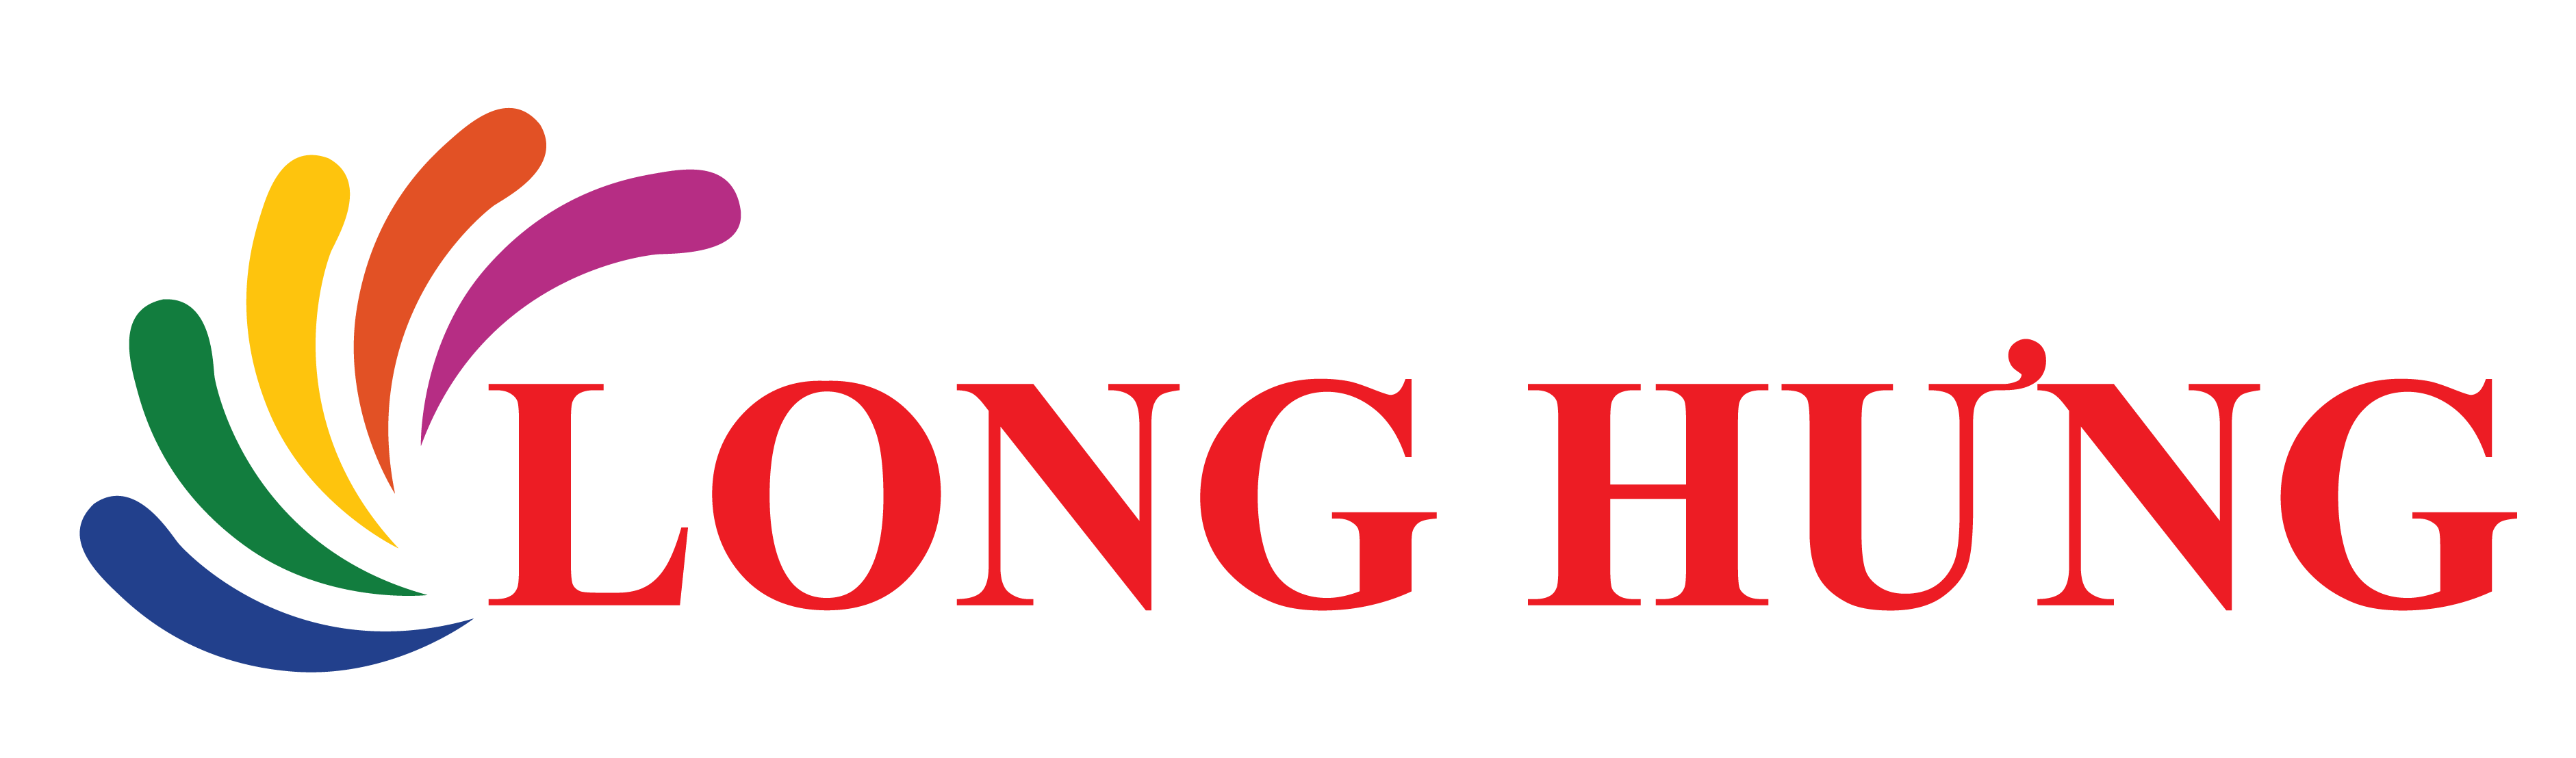 Long Hưng - Công ty đầu tư và phân phối thiết bị viễn thông chính hãng hàng đầu Việt Nam